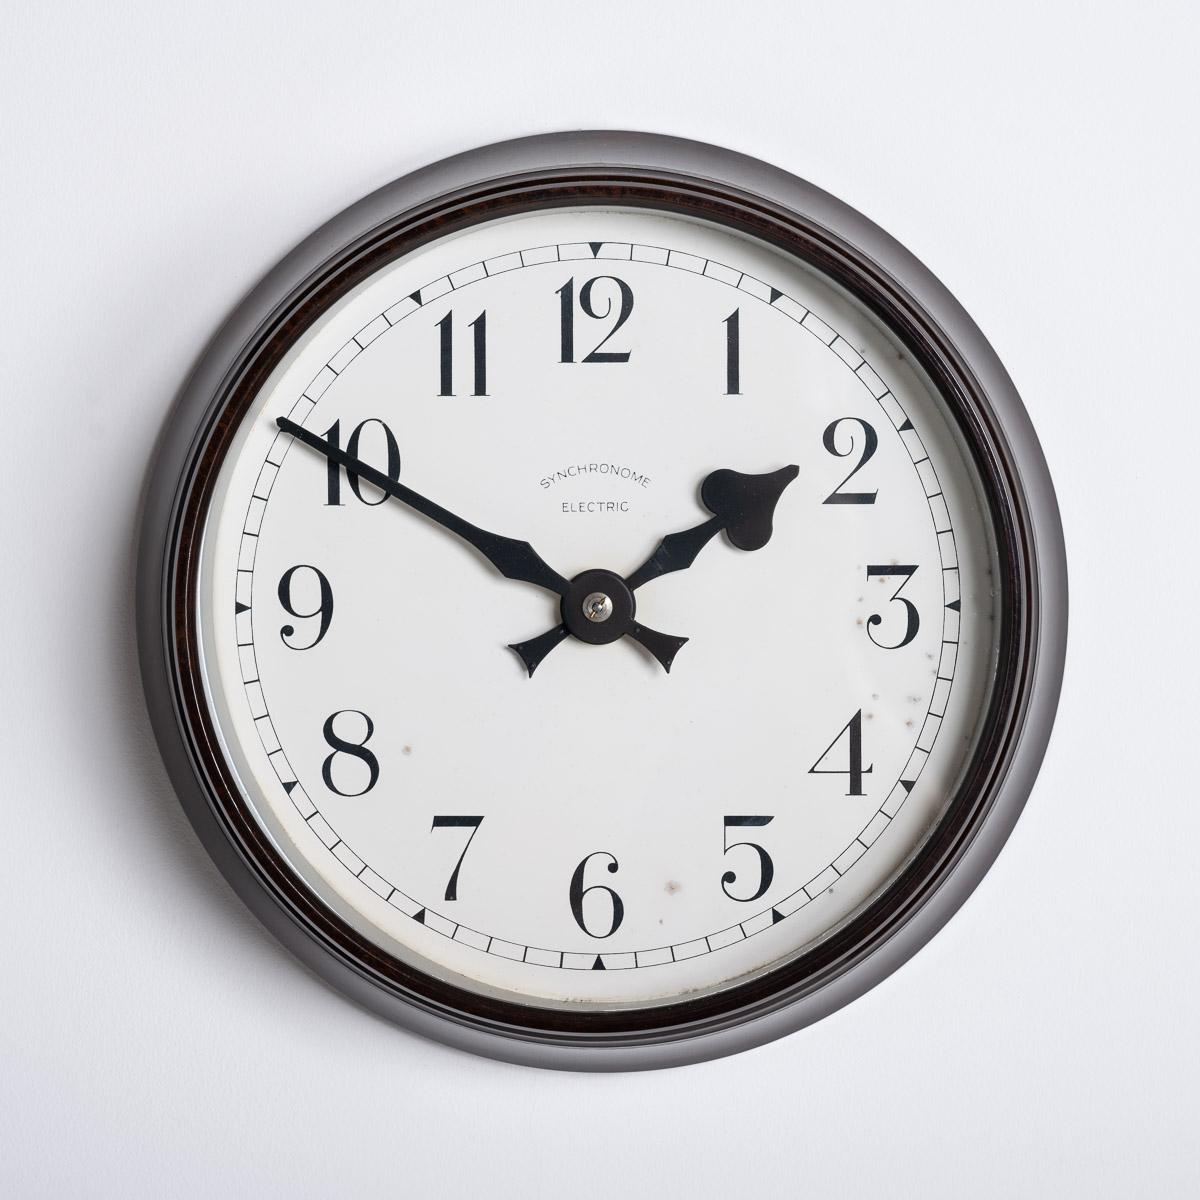 PETITE HORLOGE MURALE EN BAKÉLITE DE SYNCHRONOME

Une superbe petite horloge industrielle fabriquée en Angleterre vers 1940 par Synchronome.

Synchronome était le principal fabricant d'horloges au début et au milieu du 20e siècle, produisant